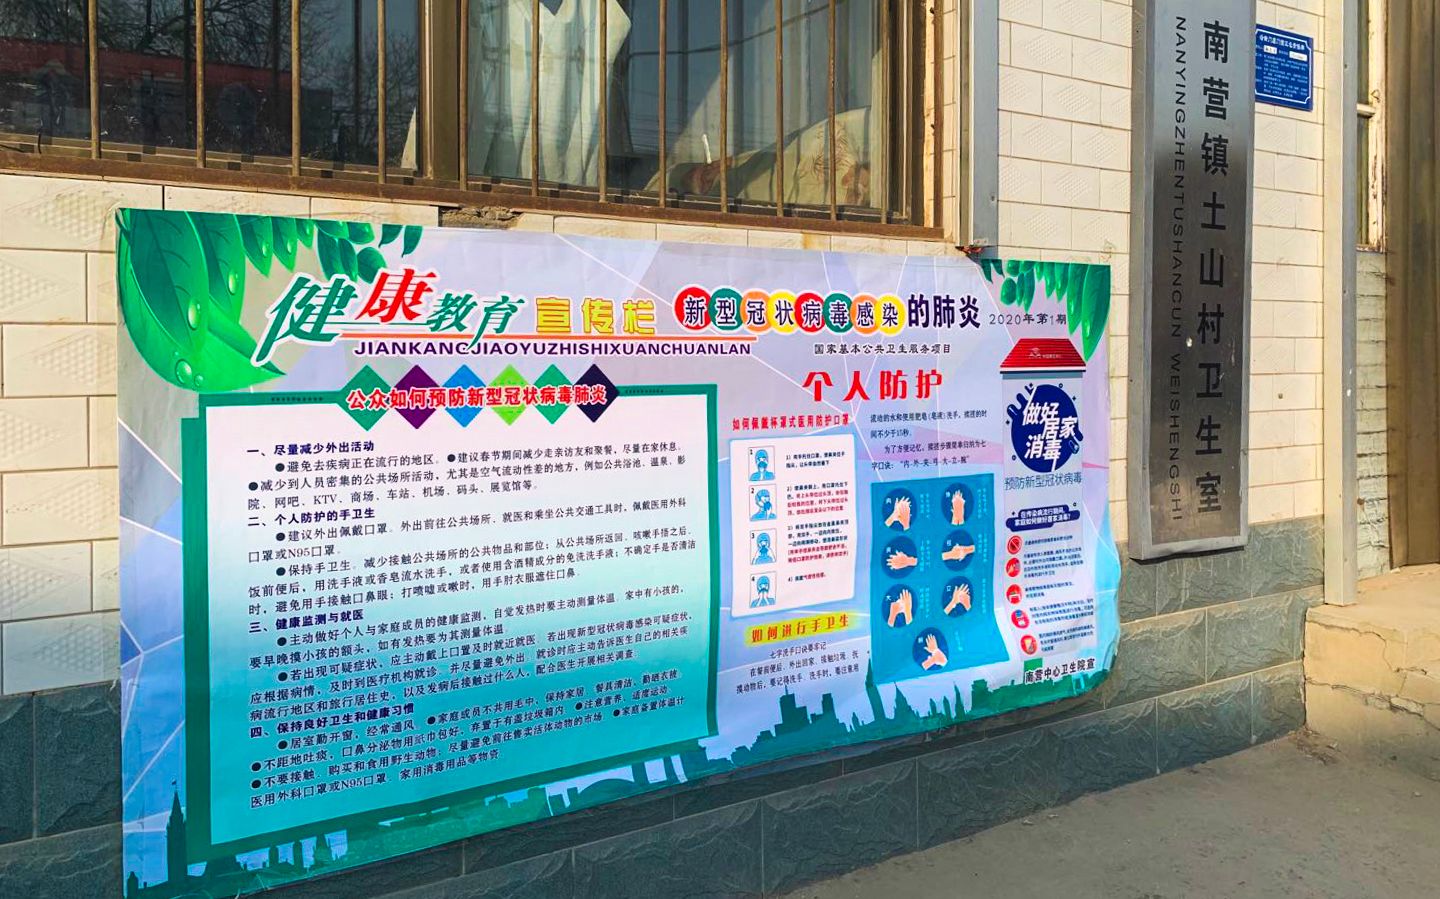 土山村卫生室外张贴个人防护知识海报。受访者供图